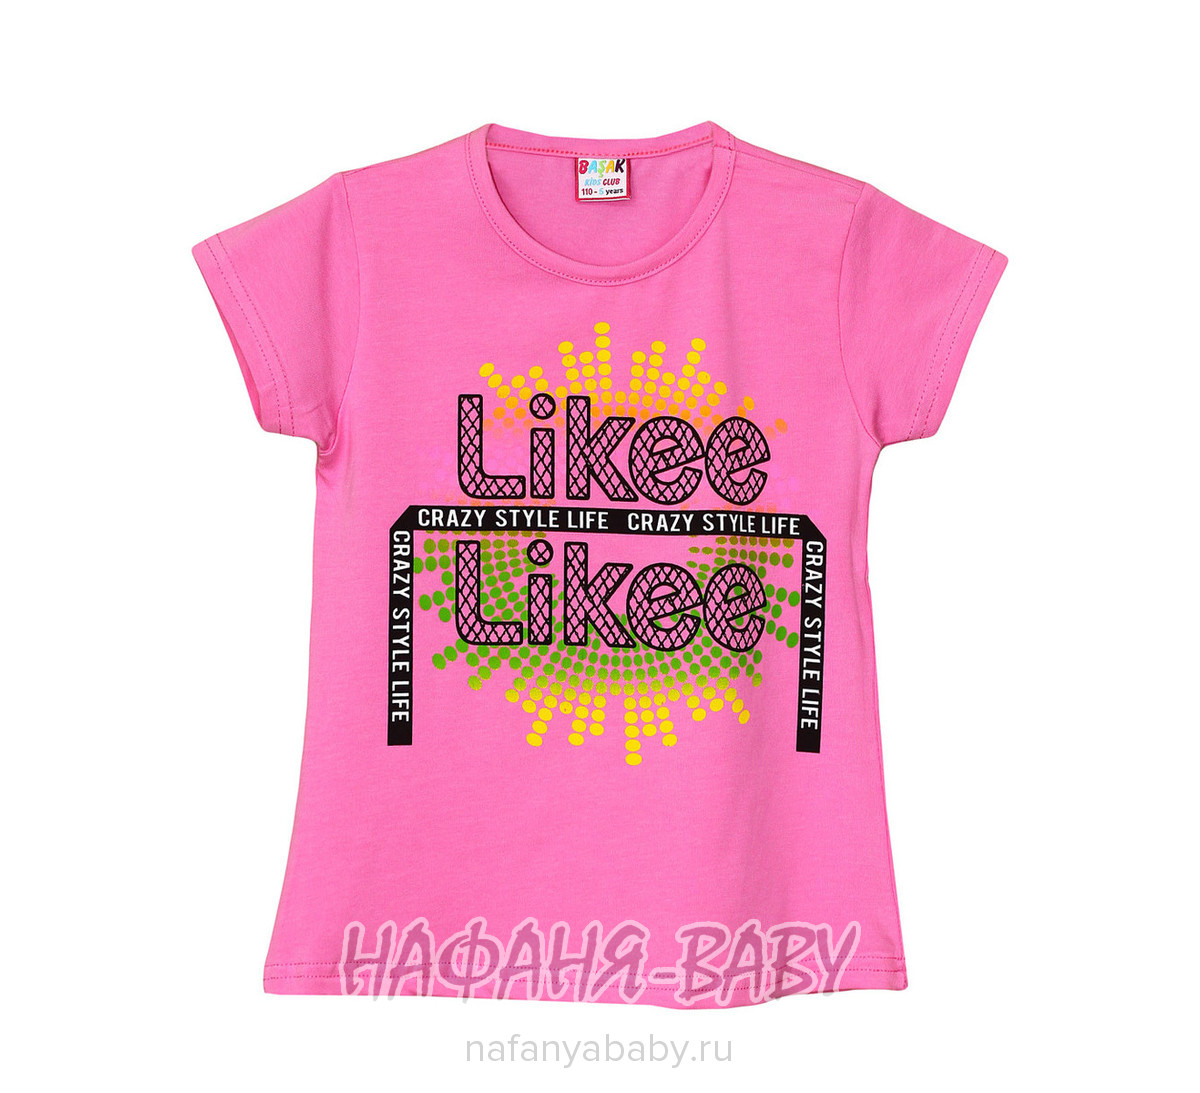 Детская футболка BASAK, купить в интернет магазине Нафаня. арт: 2663.